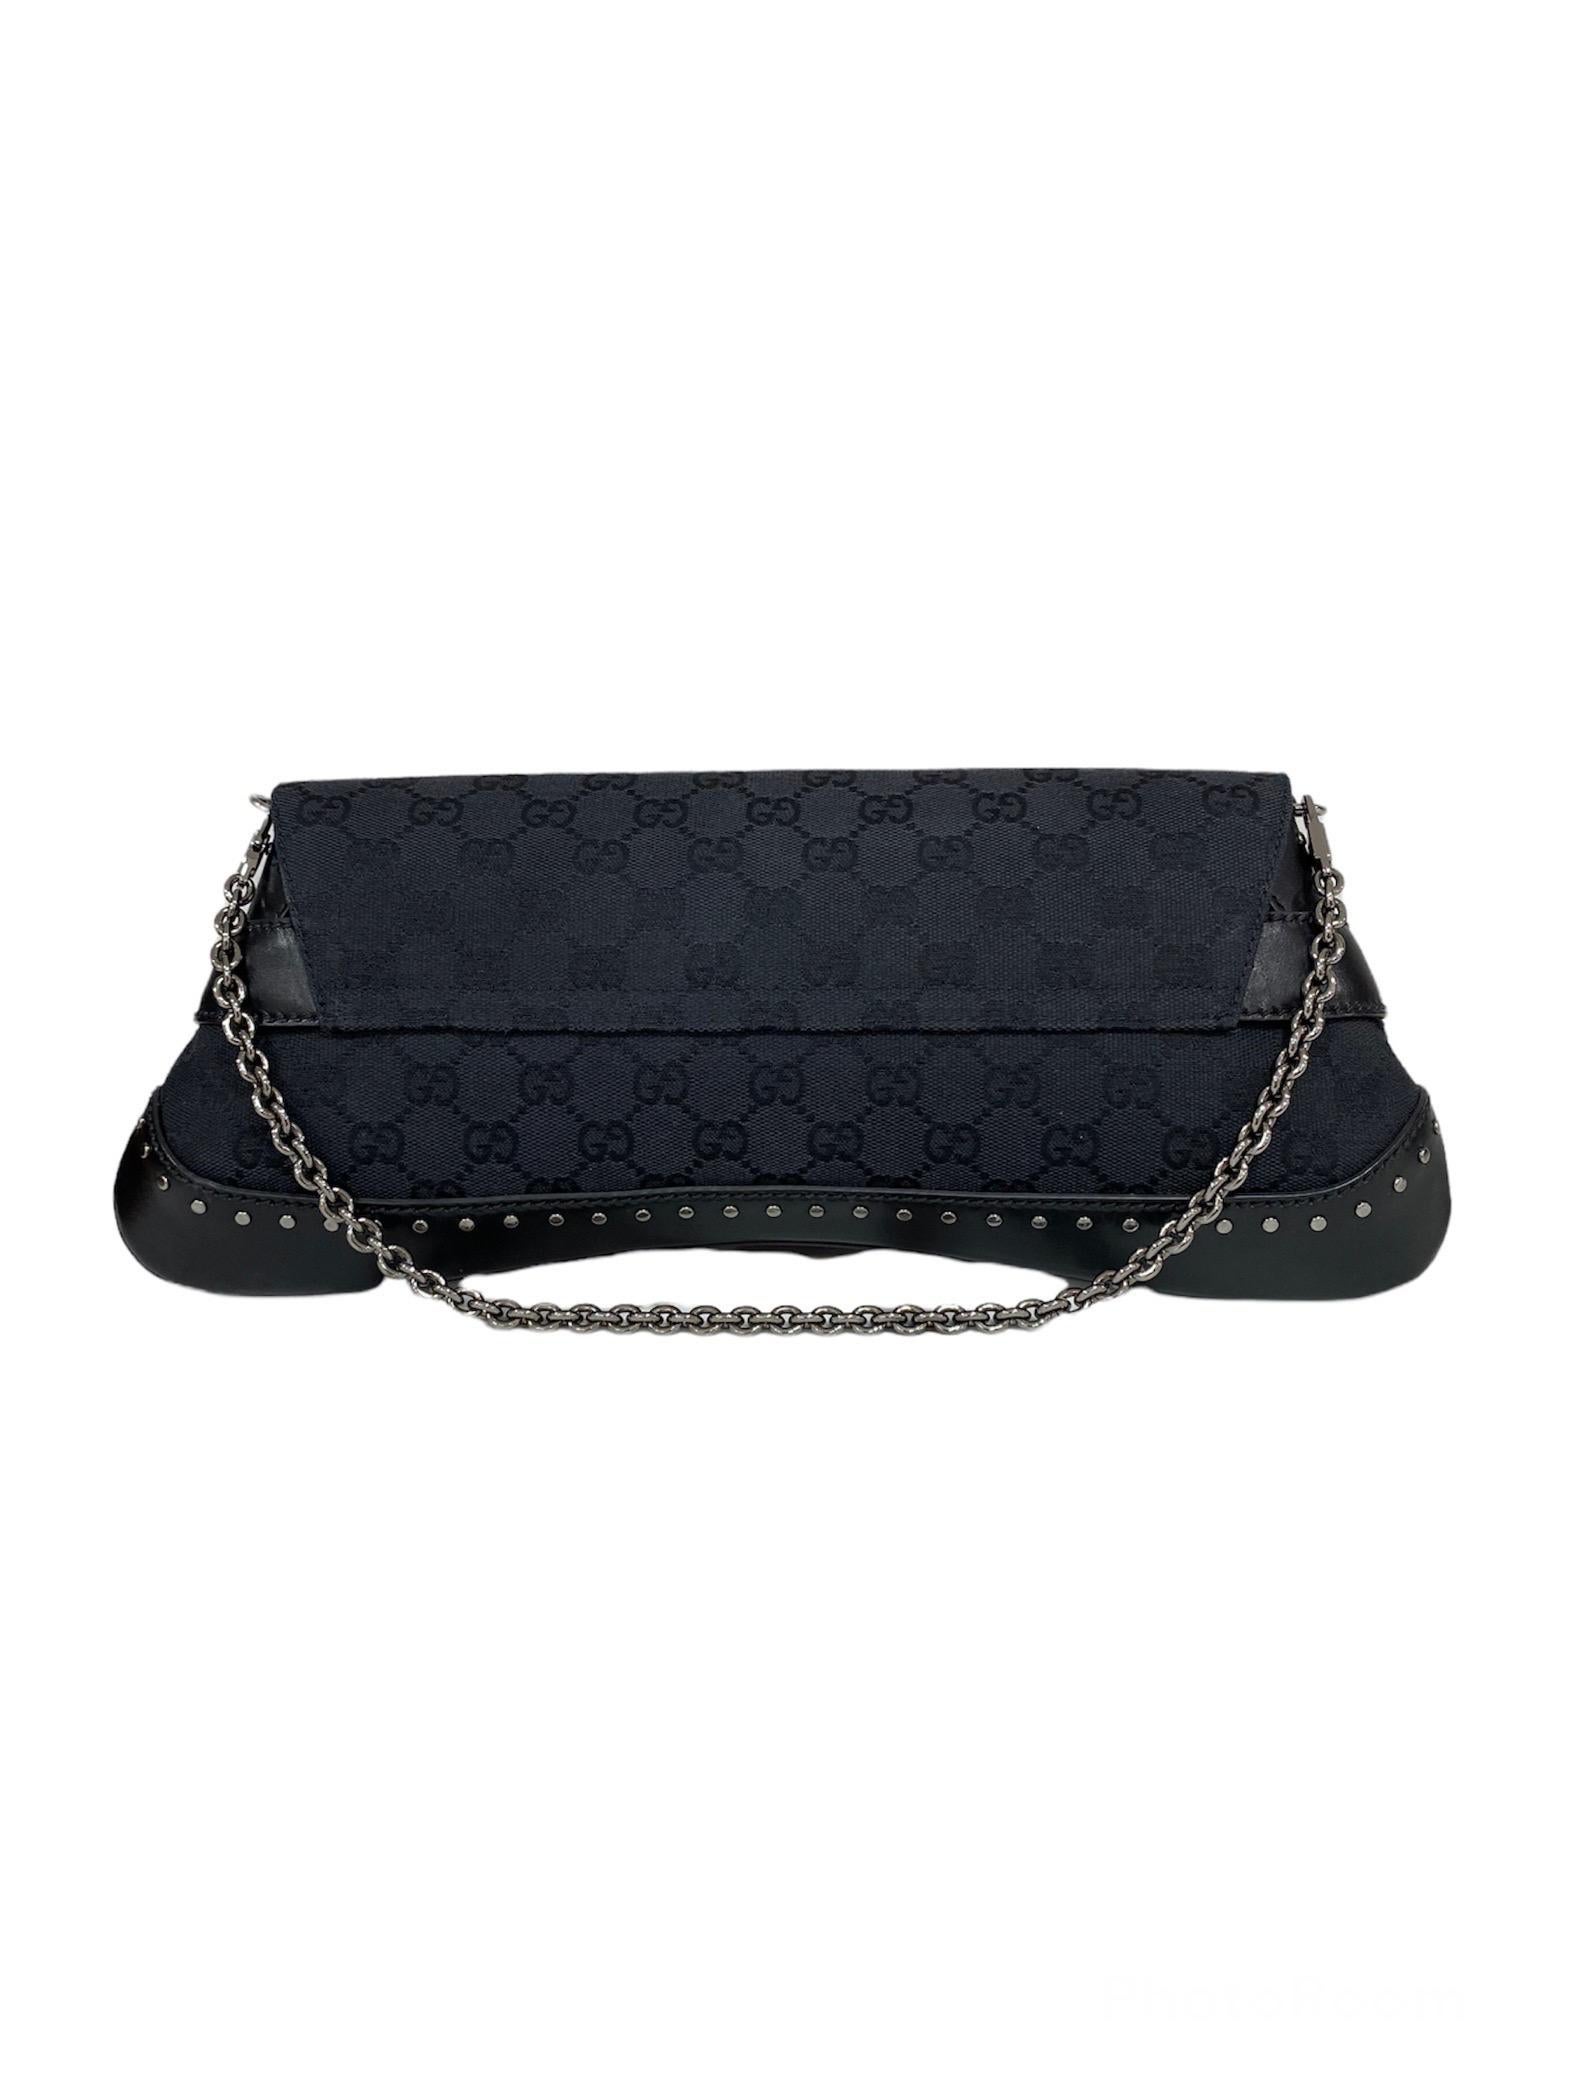 Women's Gucci Tom Ford Black Shoulder Bag